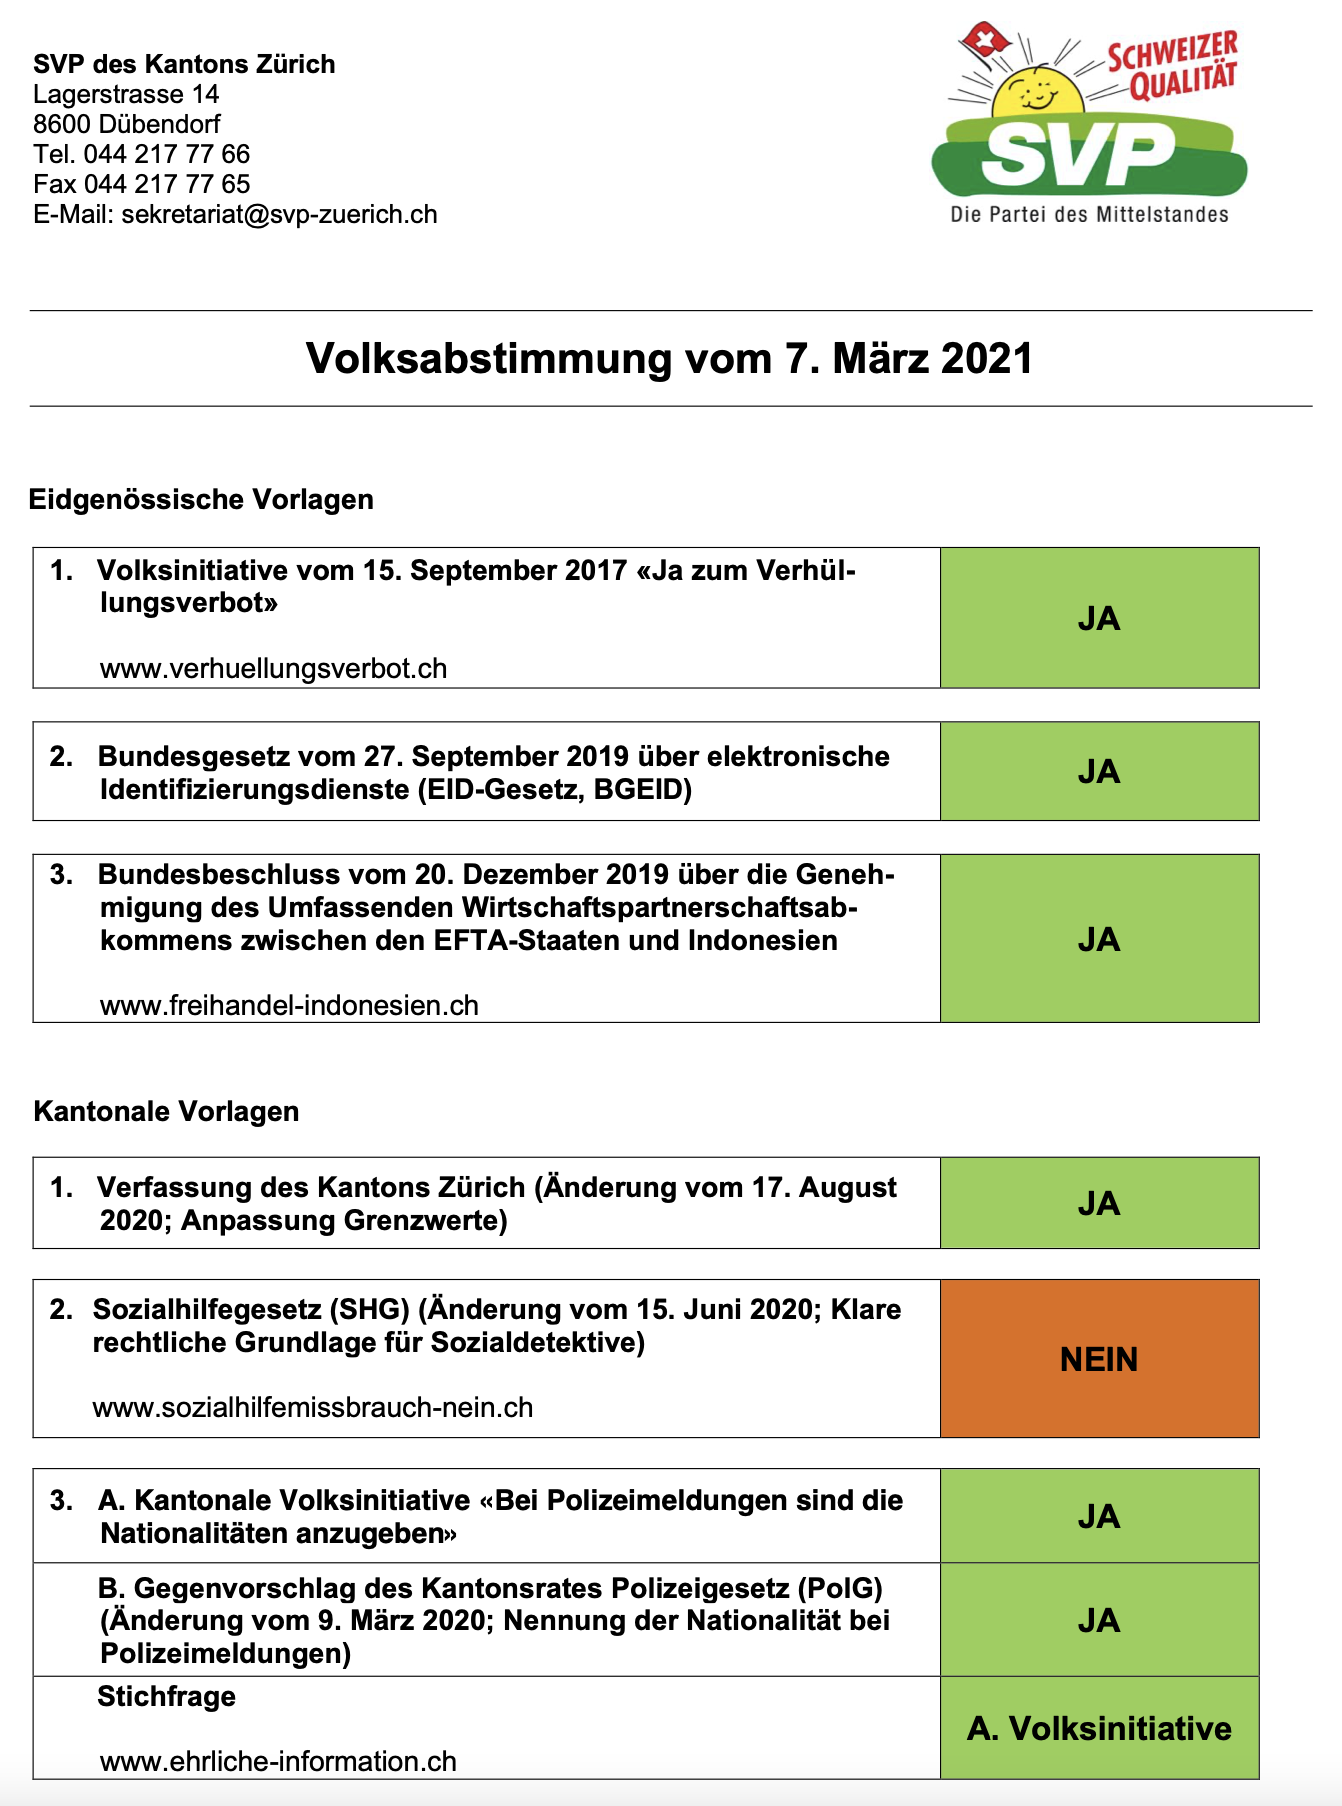 Parolen der SVP Kanton Zürich - 7. März 2021